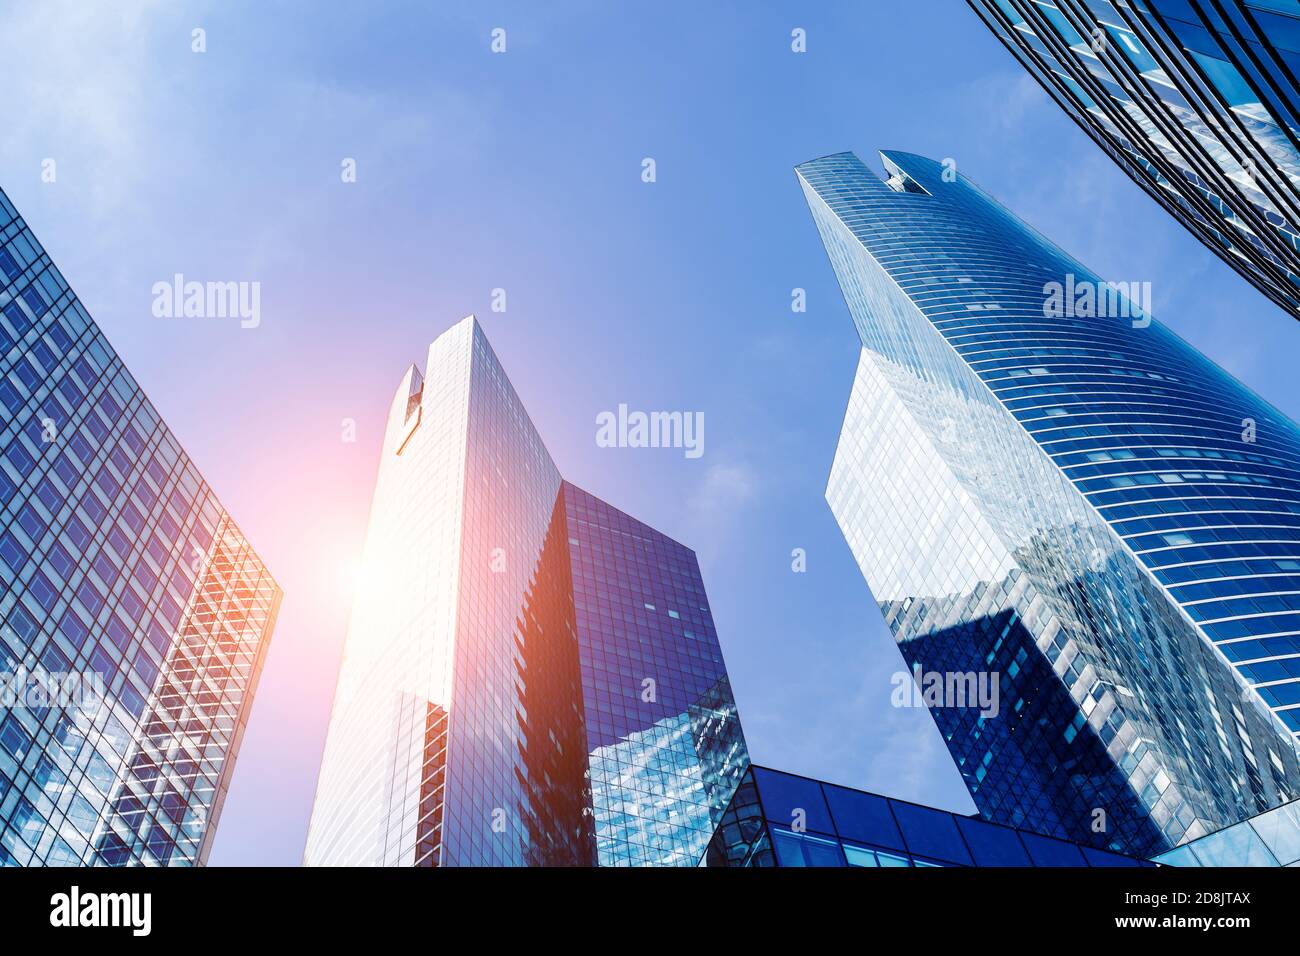 Immeubles de bureaux dans le quartier financier avec lumière du soleil et ciel reflétant dans les murs modernes de verre de gratte-ciel. Expérience professionnelle. Angle faible de v Banque D'Images